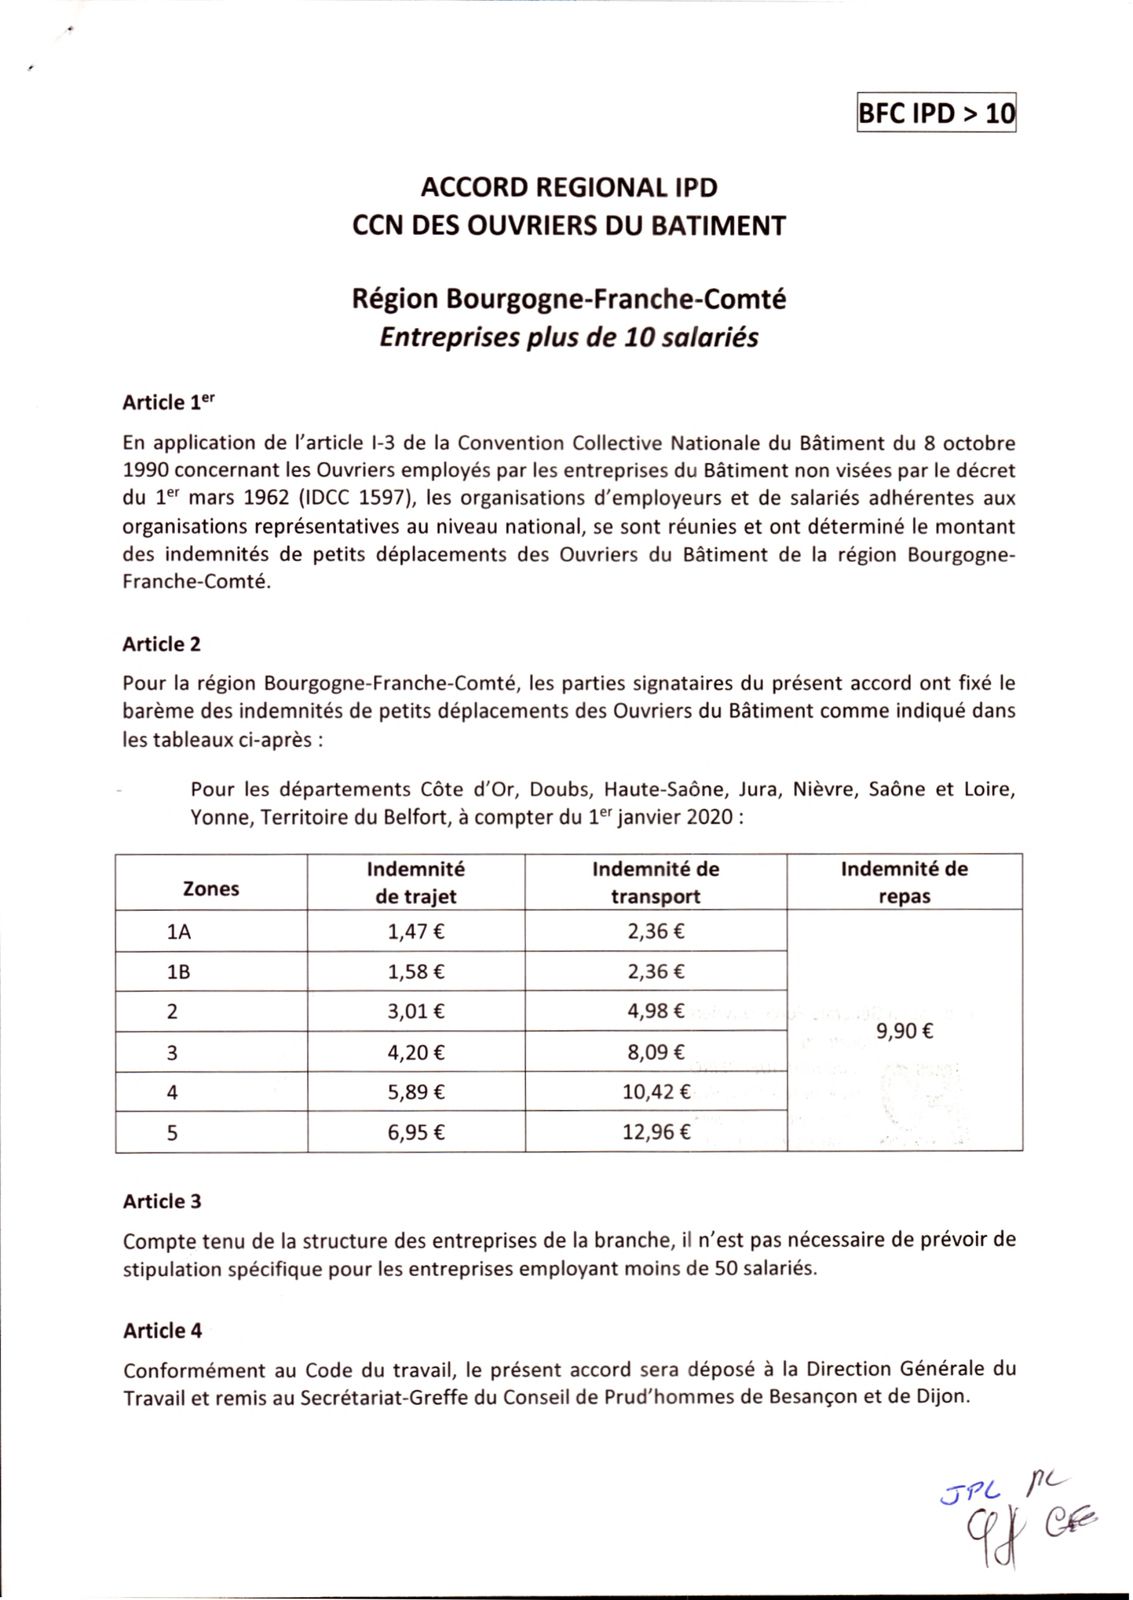 Les salaires des ouvriers Bourgogne-Franche Comté - CNC BÂTIMENT CFDT